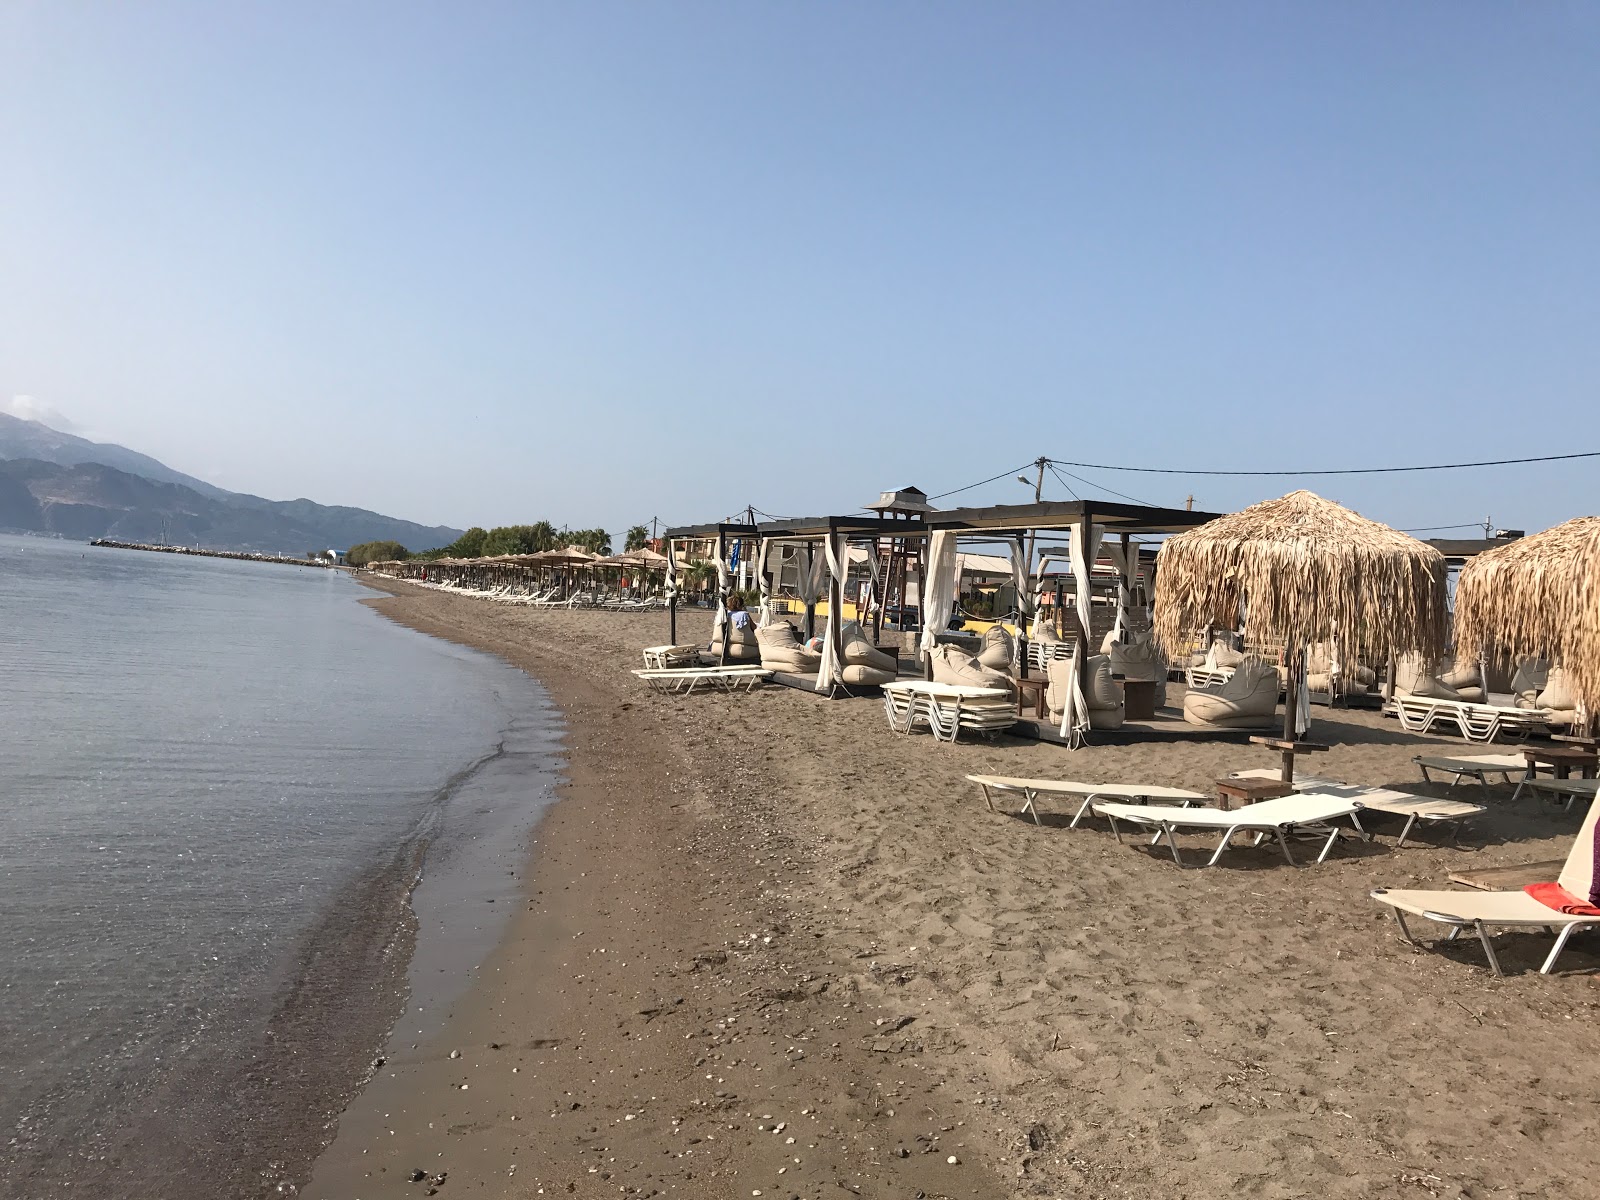 Chiliadou beach'in fotoğrafı kısmen temiz temizlik seviyesi ile